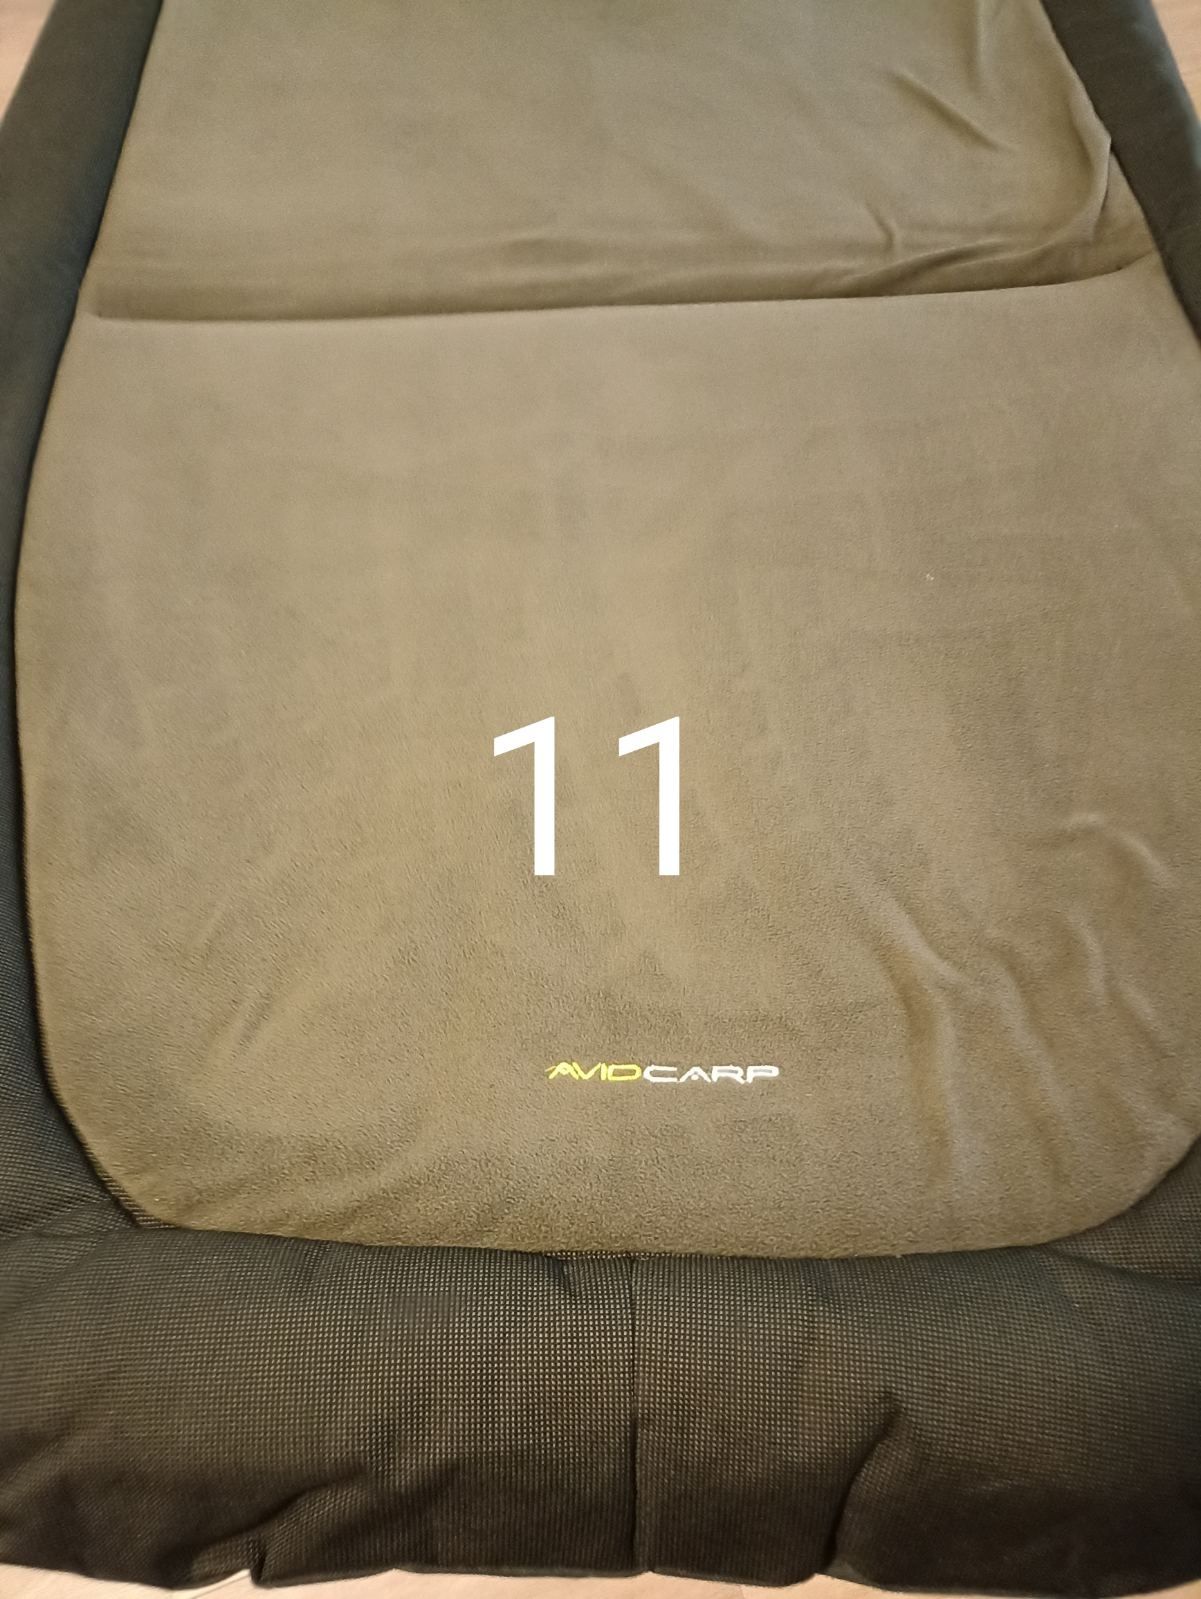 Карповая кровать - кресло ," AvidCarp - Megabite "